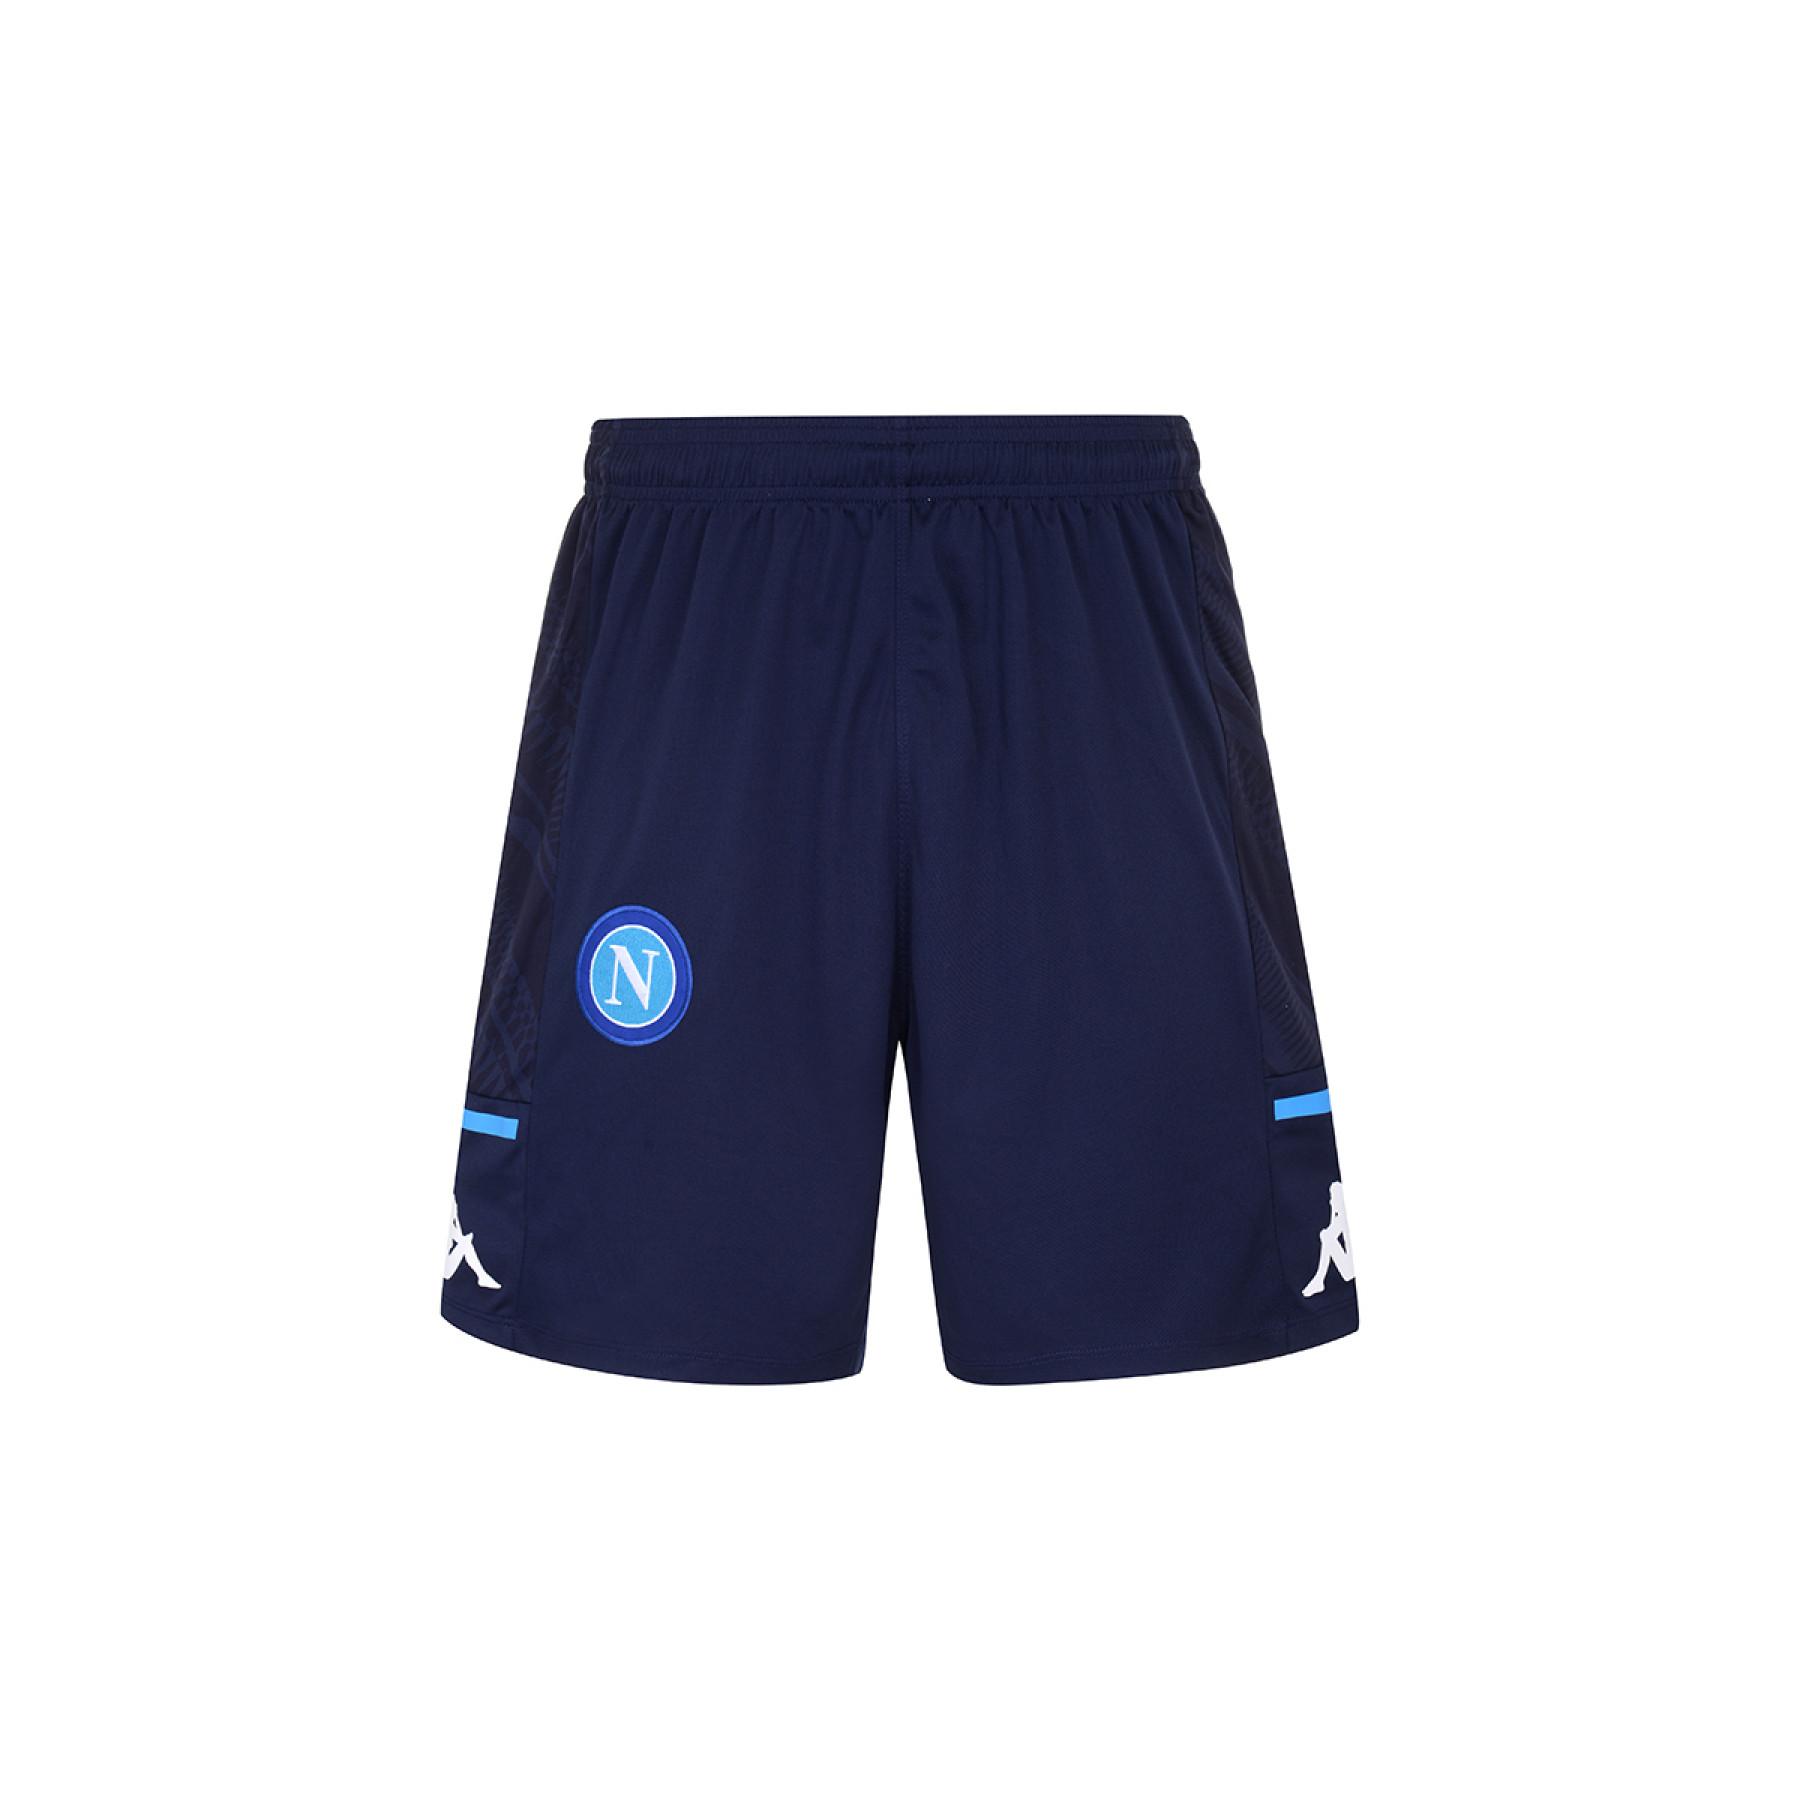 Pantalones cortos de entrenamiento SSC Napoli 2020/21 ahorao 4